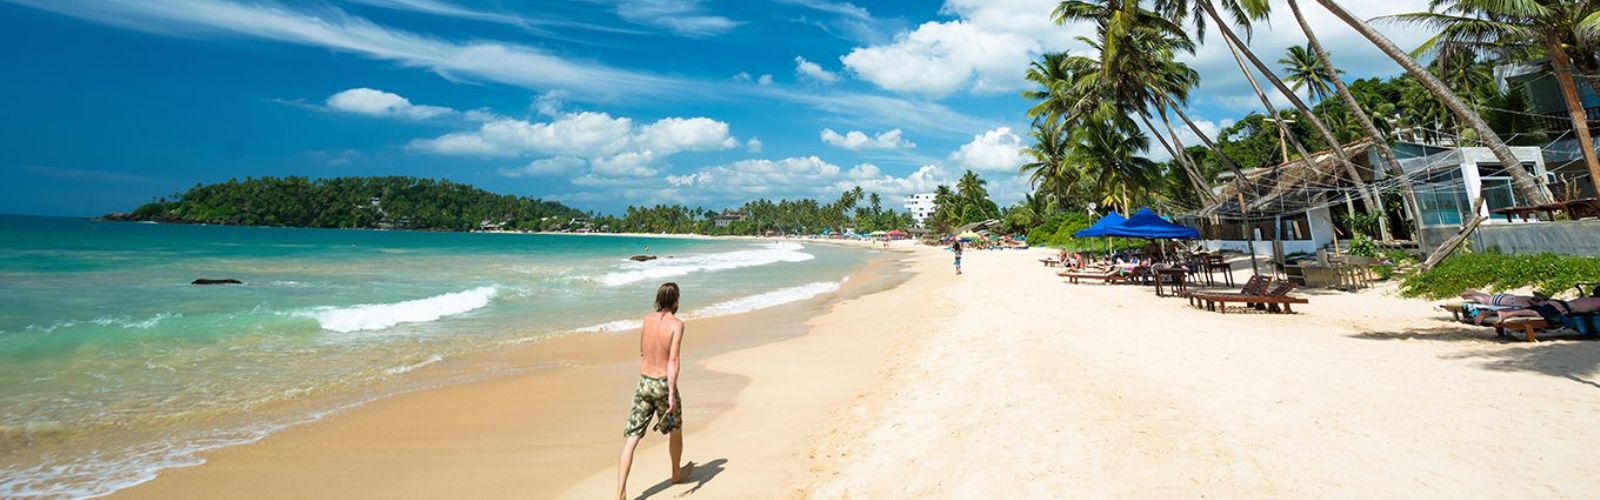 Веб камеры шри ланка. Тринкомали Шри Ланка. Тринкомали пляжи. Пляж Нилавели Шри Ланка. Тринкомали пляж Нилавели.